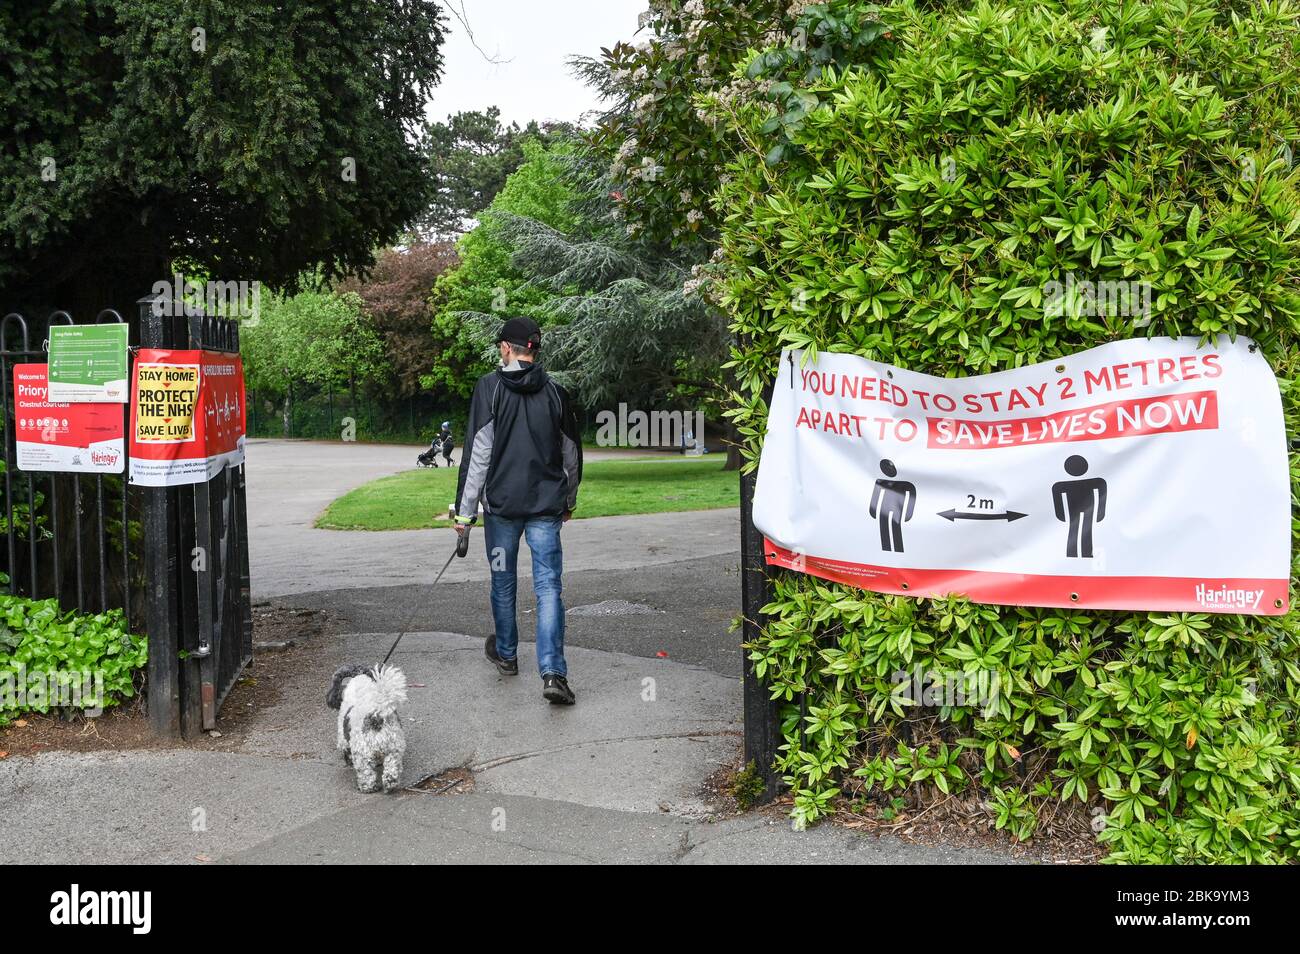 Un uomo che cammina un cane attraverso i cancelli del parco a Londra con gli avvisi "Say home, proteggere il `NHS" e "è necessario rimanere a 2 metri di distanza, salvare vite ora" Foto Stock